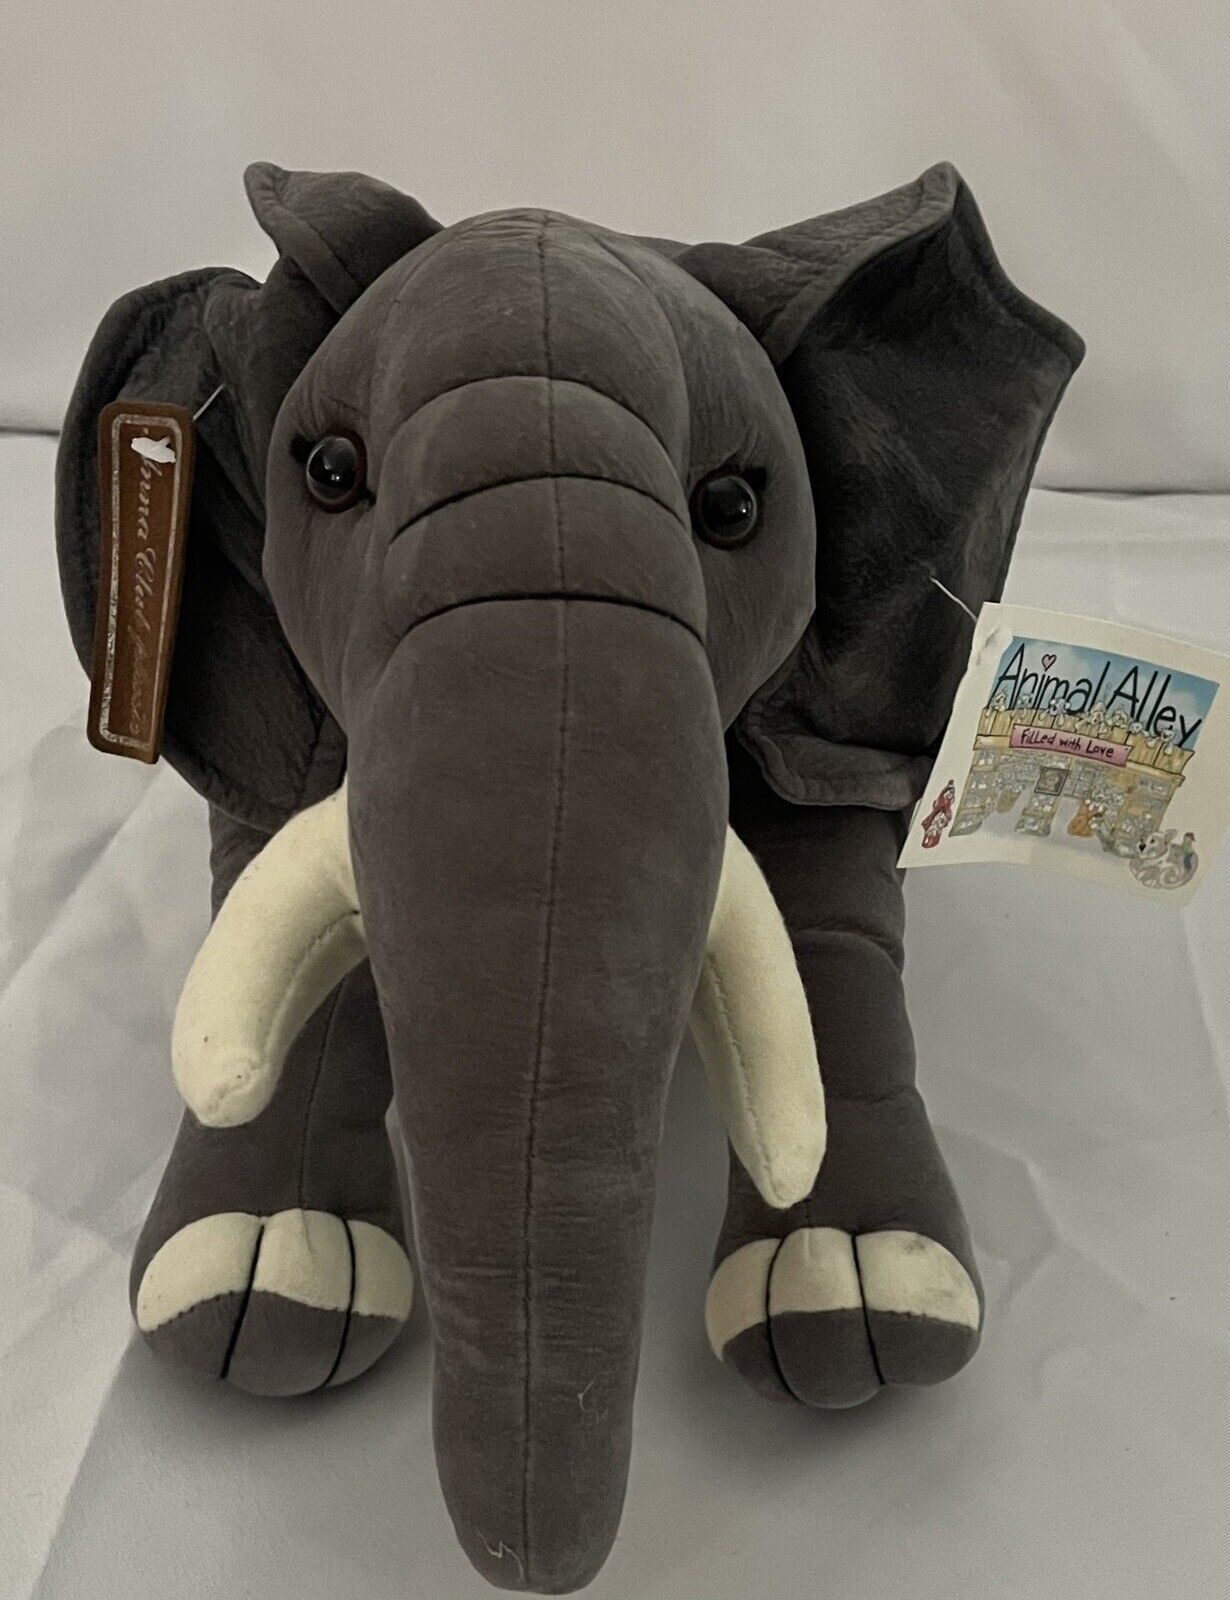 Anna Club Elephant Plush Vintage 2000 Animal Alley Toys R Us Stuffed Tusks NOS Animal Alley - фотография #11